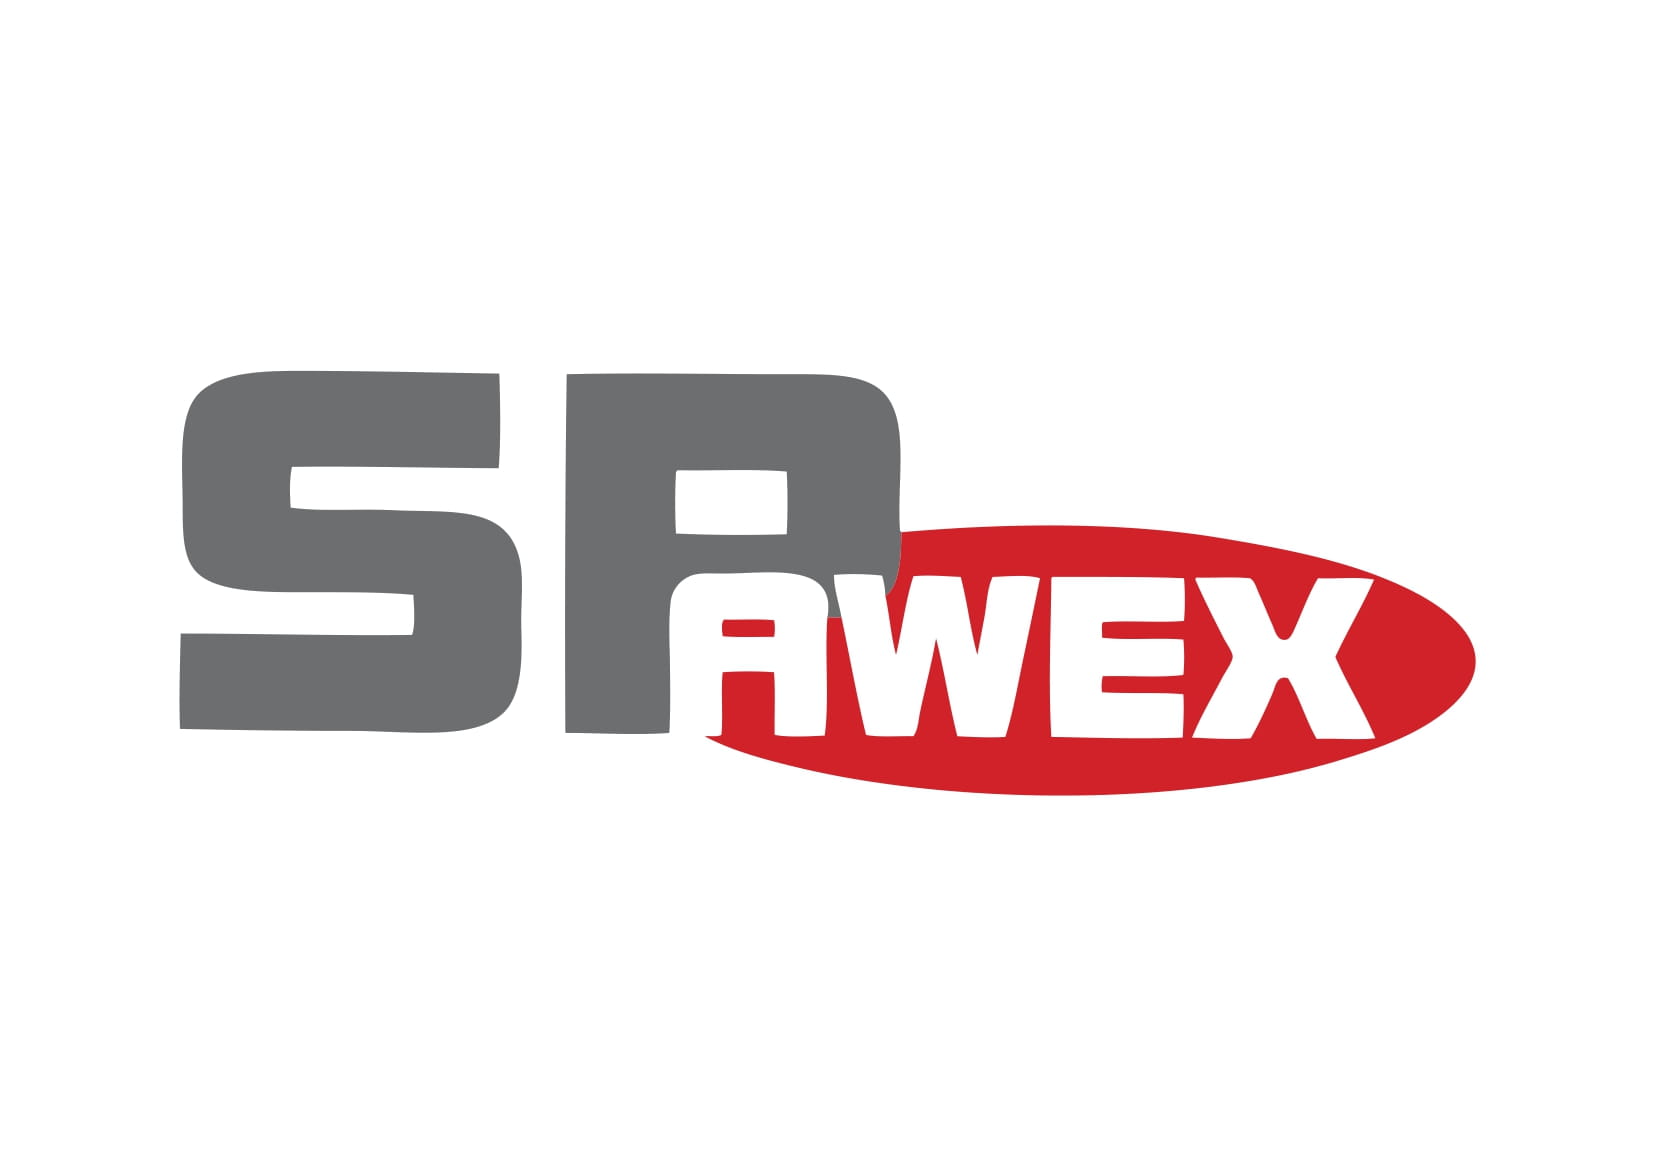 Spawex szuka pracowników - Zdjęcie główne